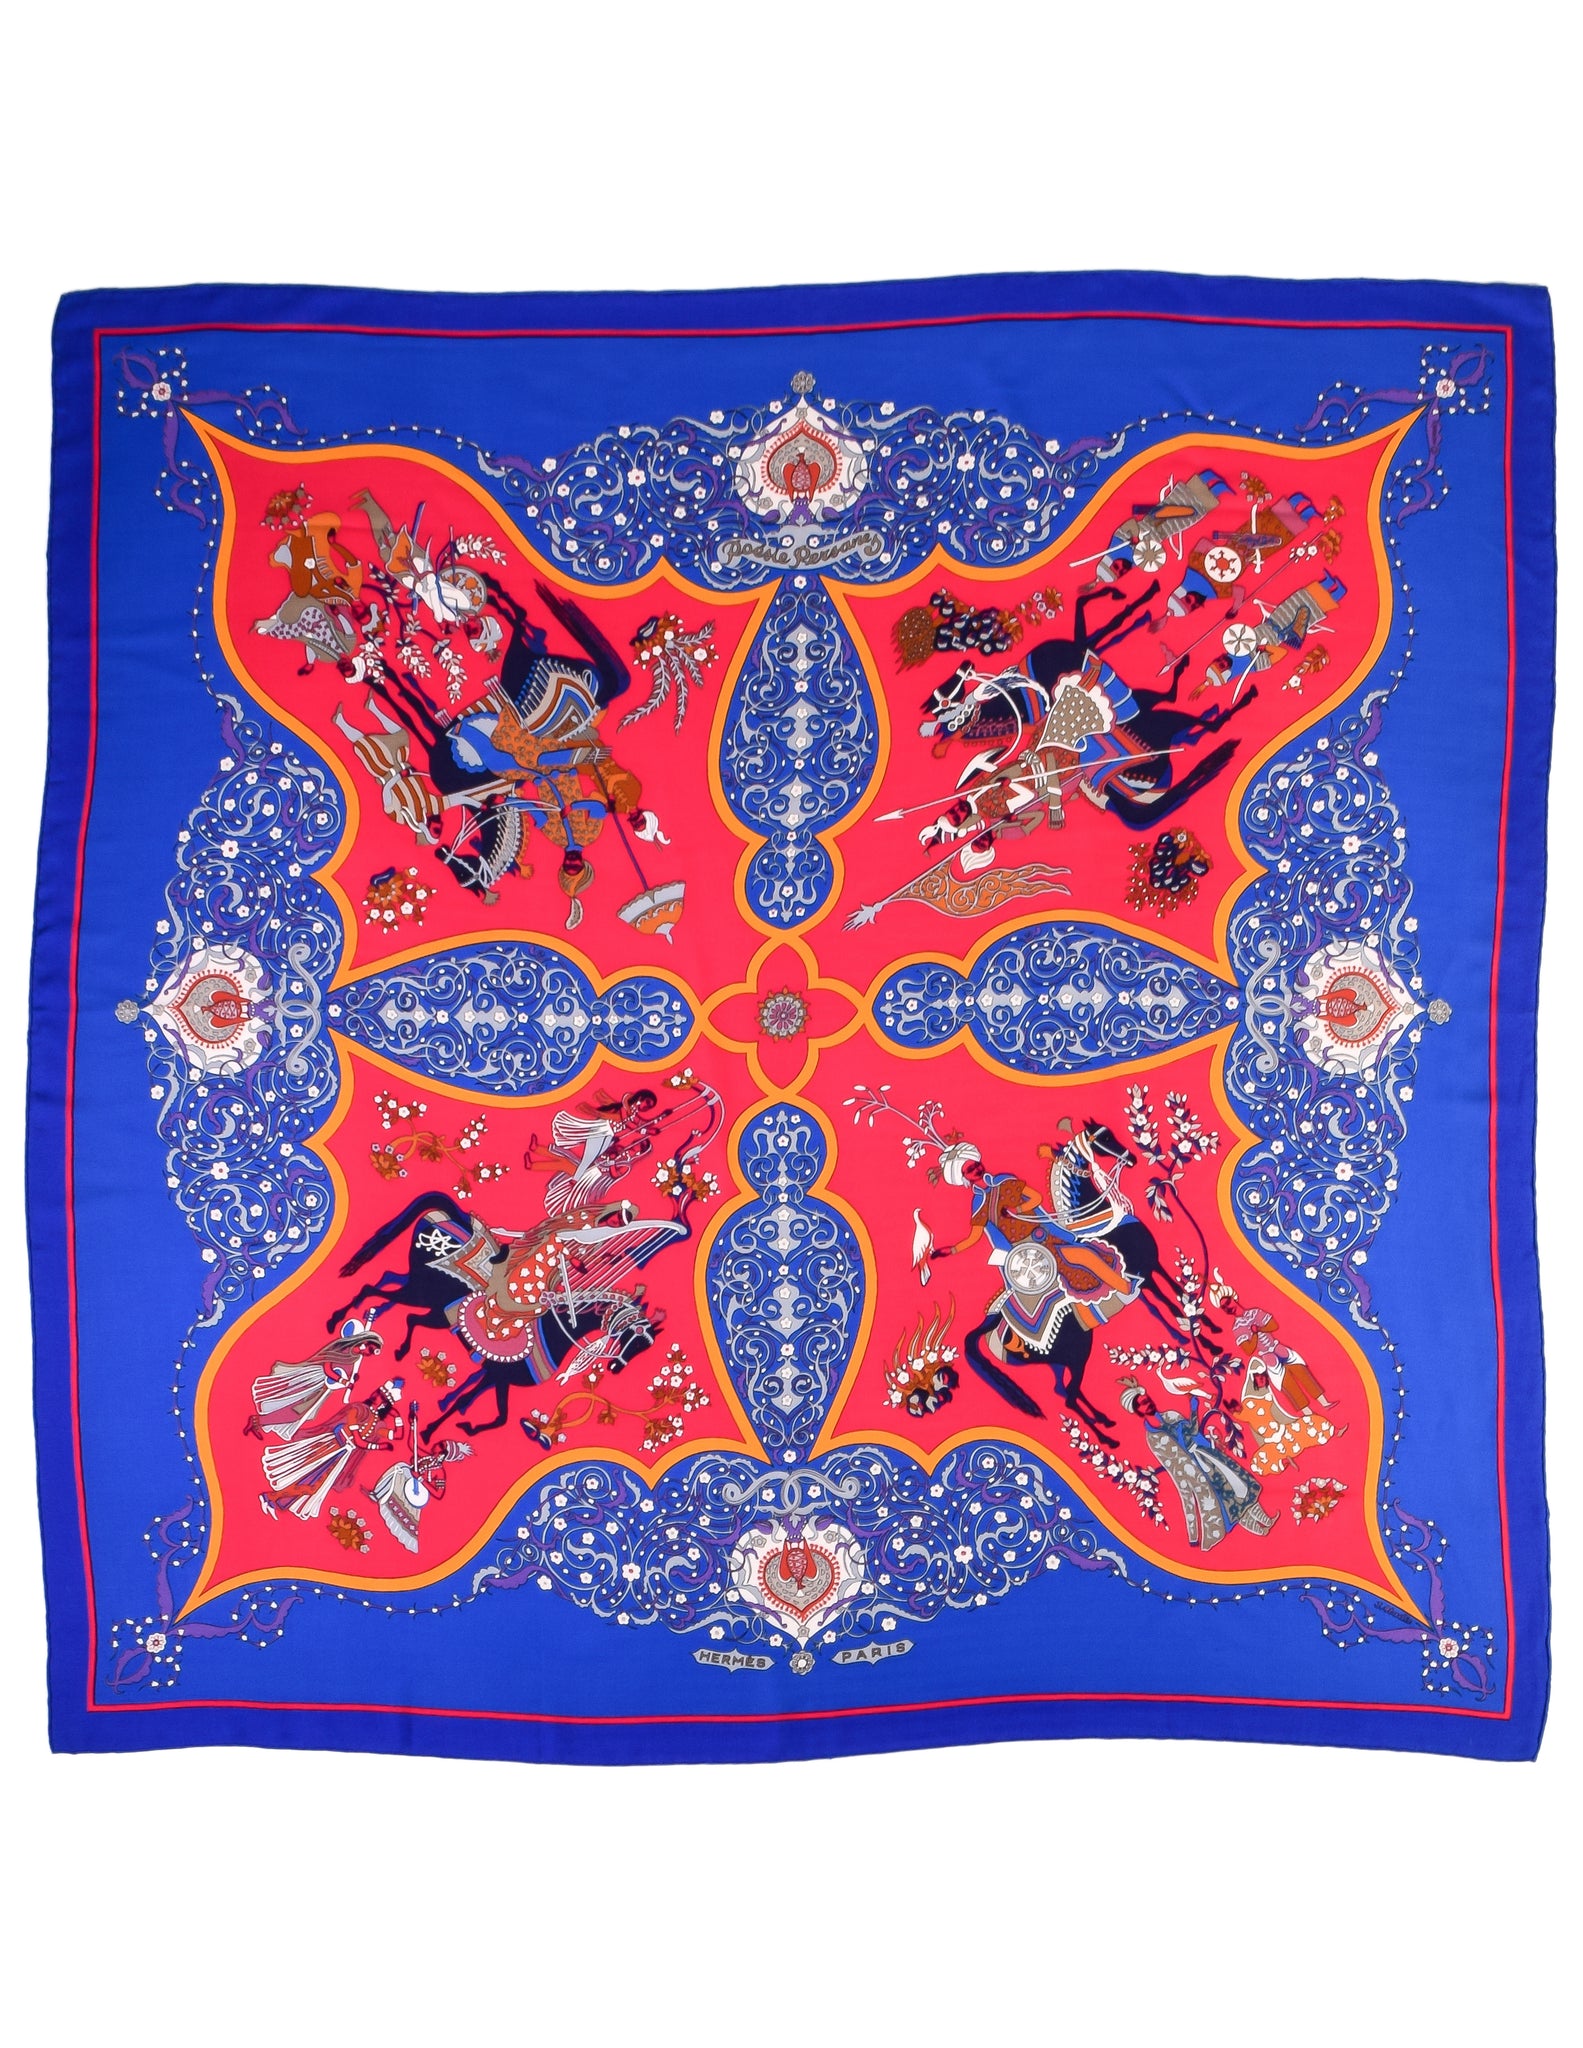 Hermes Vintage Poesie Persane Blue Red Massive Cashmere Silk Scarf Shawl